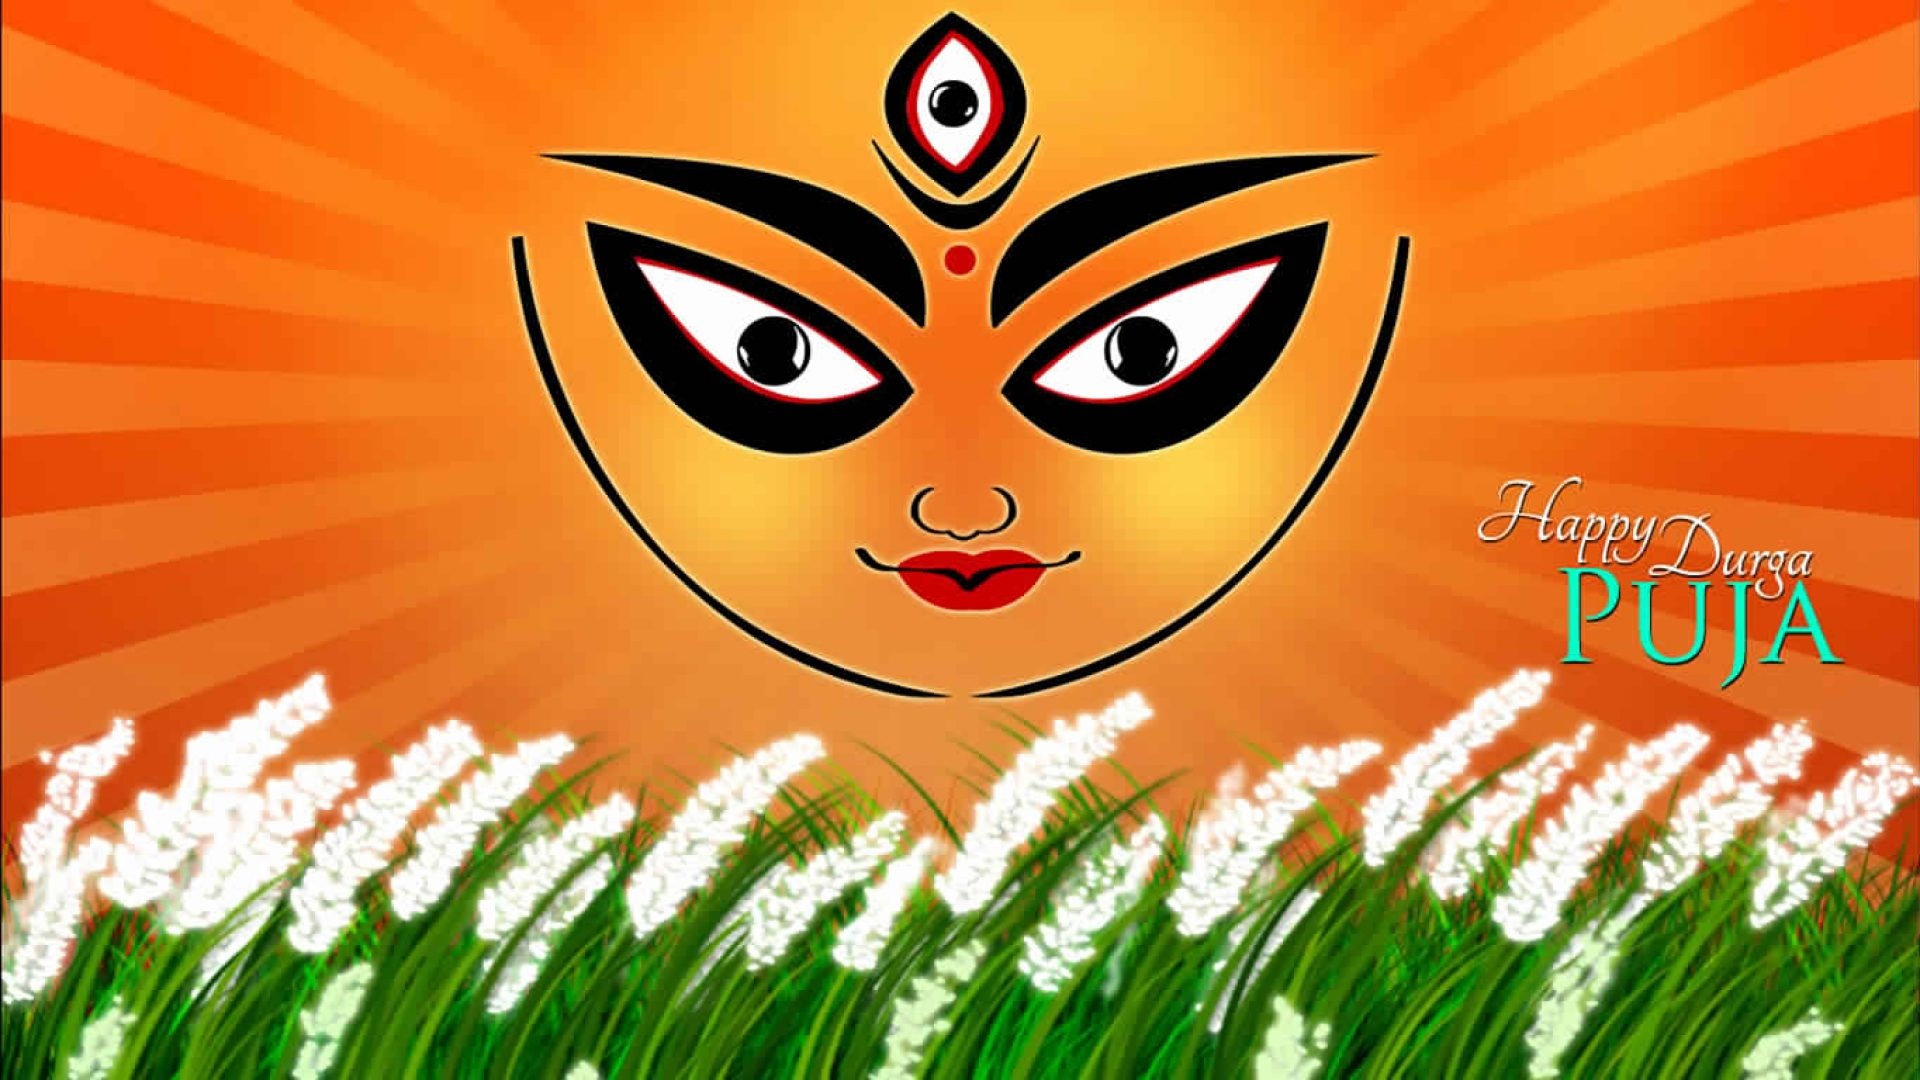 Maa Durga independance